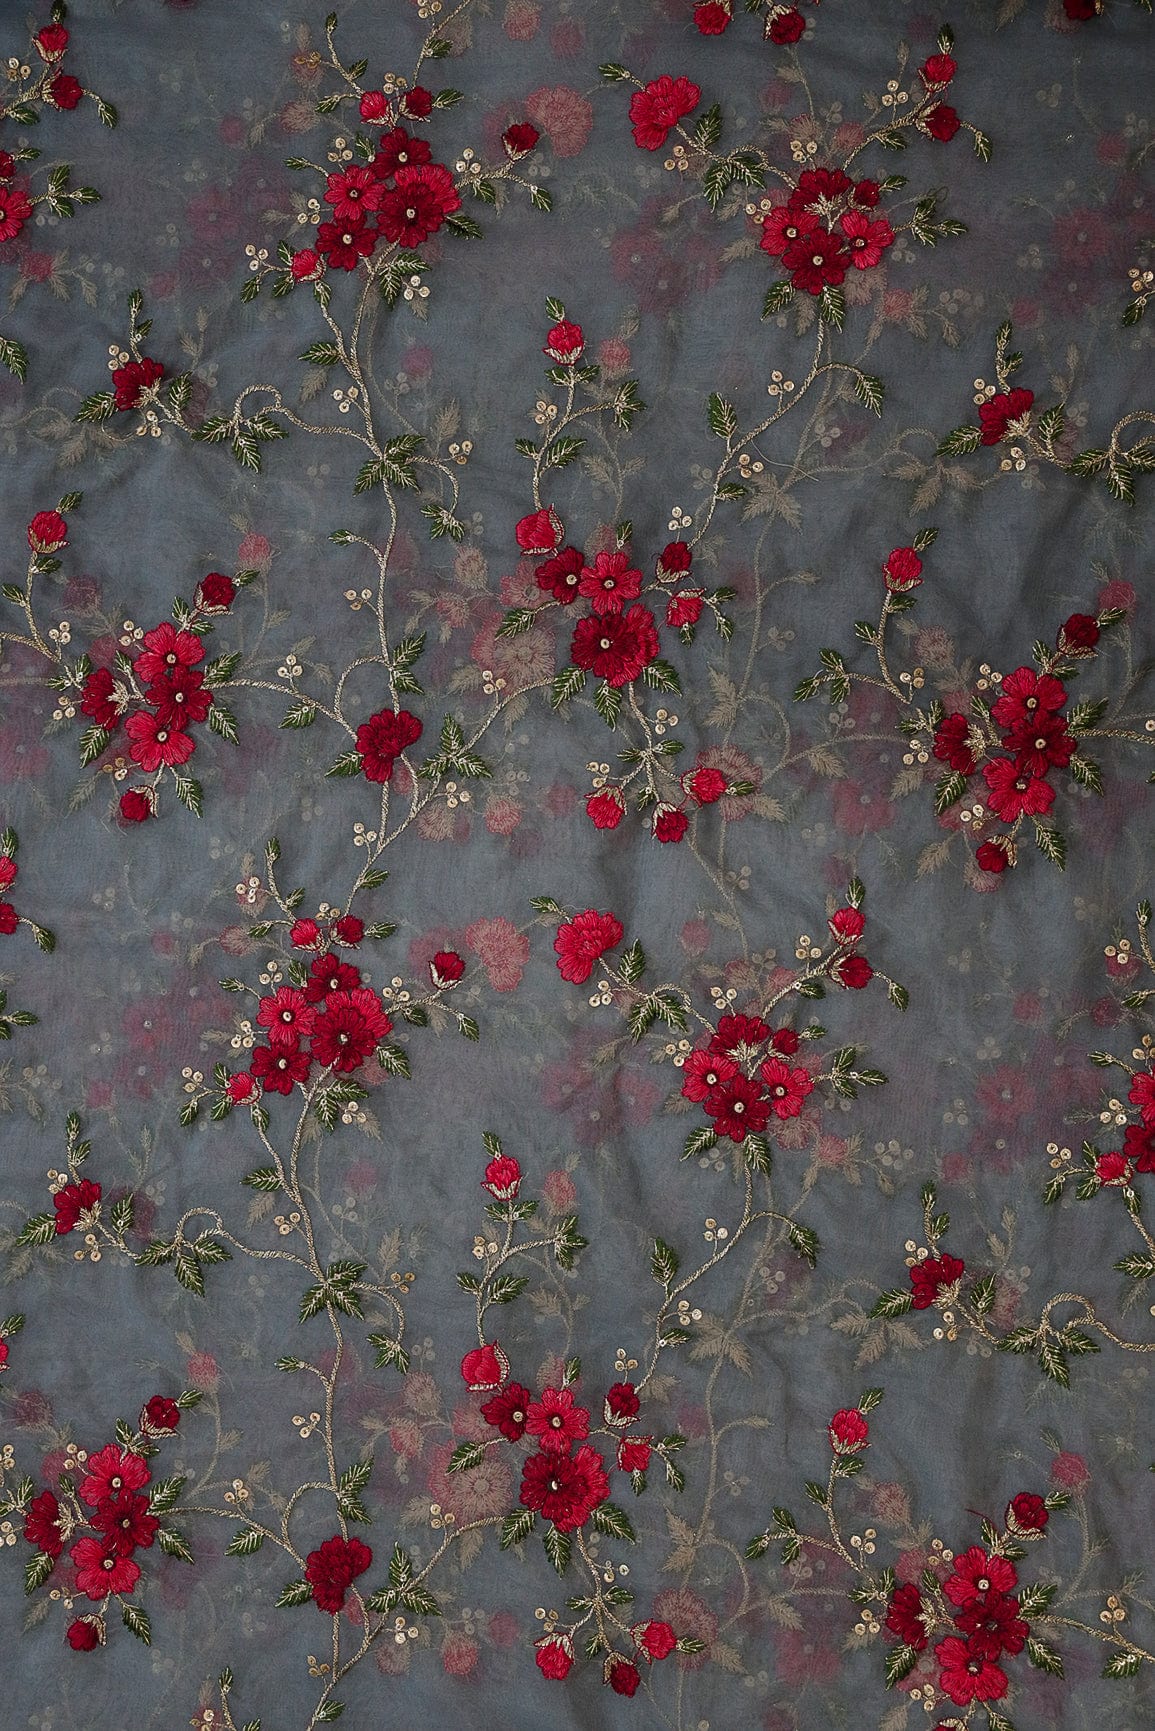 doeraa LEHENGA SET Grey and Red Unstitched Lehenga Set Fabric (3 Piece)